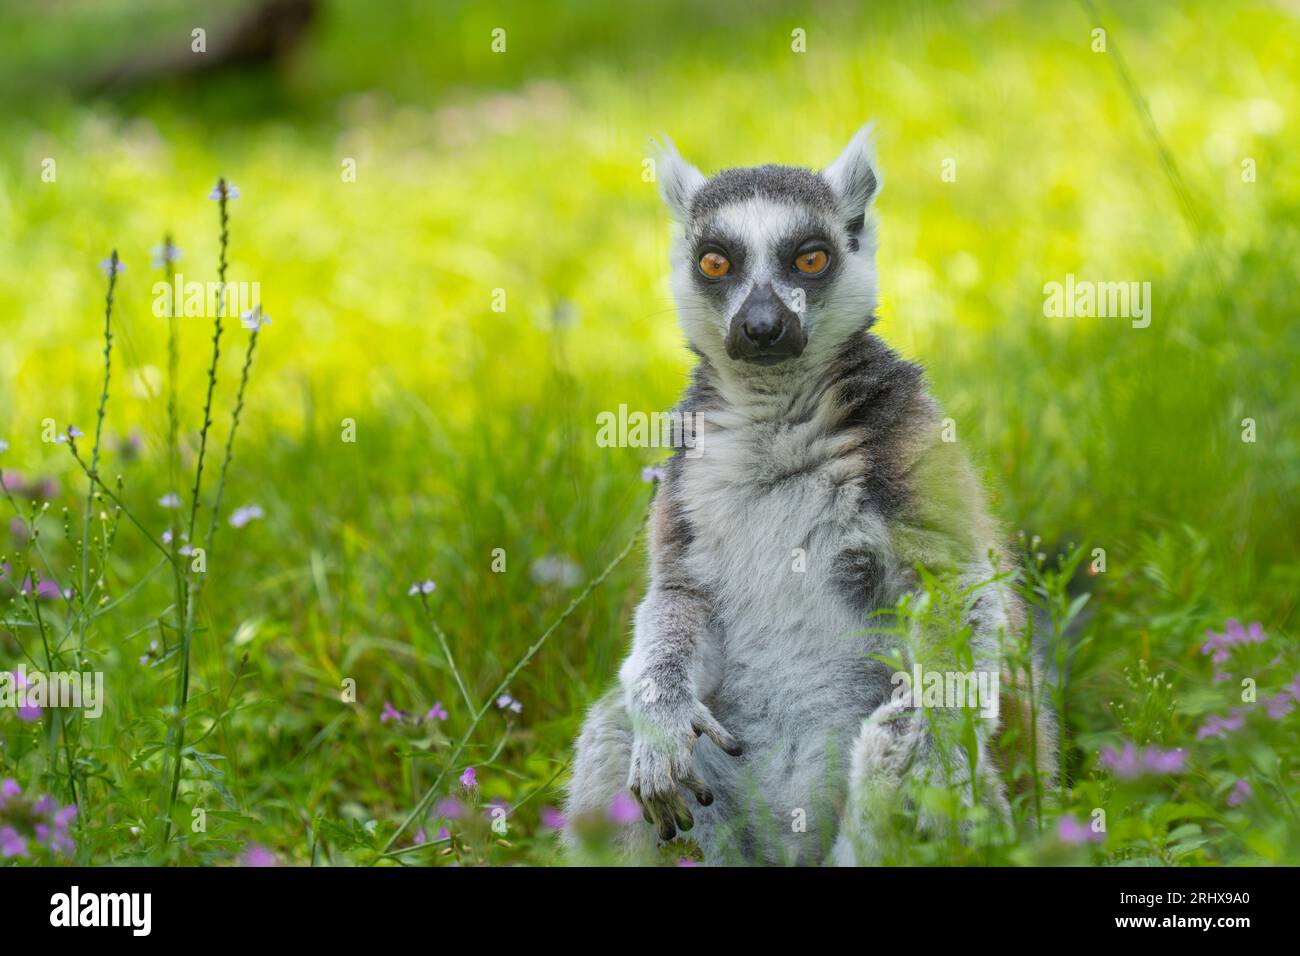 Un lémur de cola anillada meditando se sienta en la hierba y mira a la cámara Foto de stock